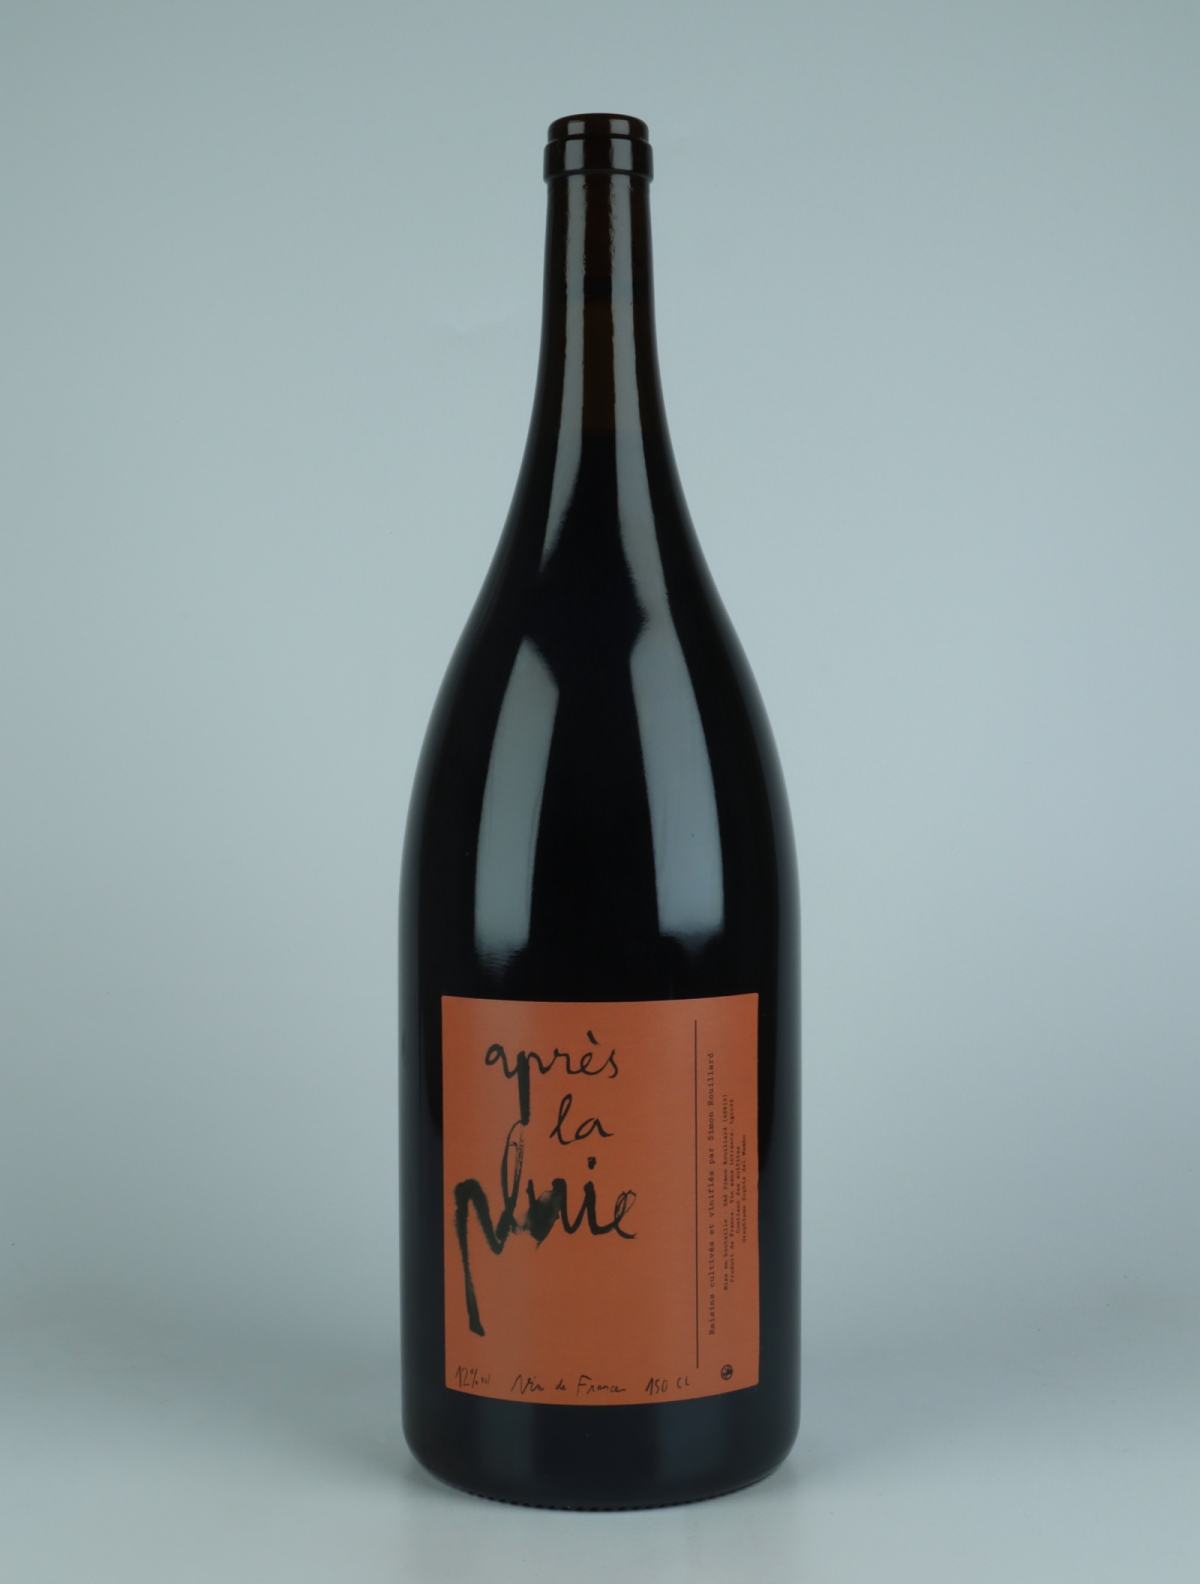 A bottle 2022 Après la pluie Red wine from Simon Rouillard, Loire in France